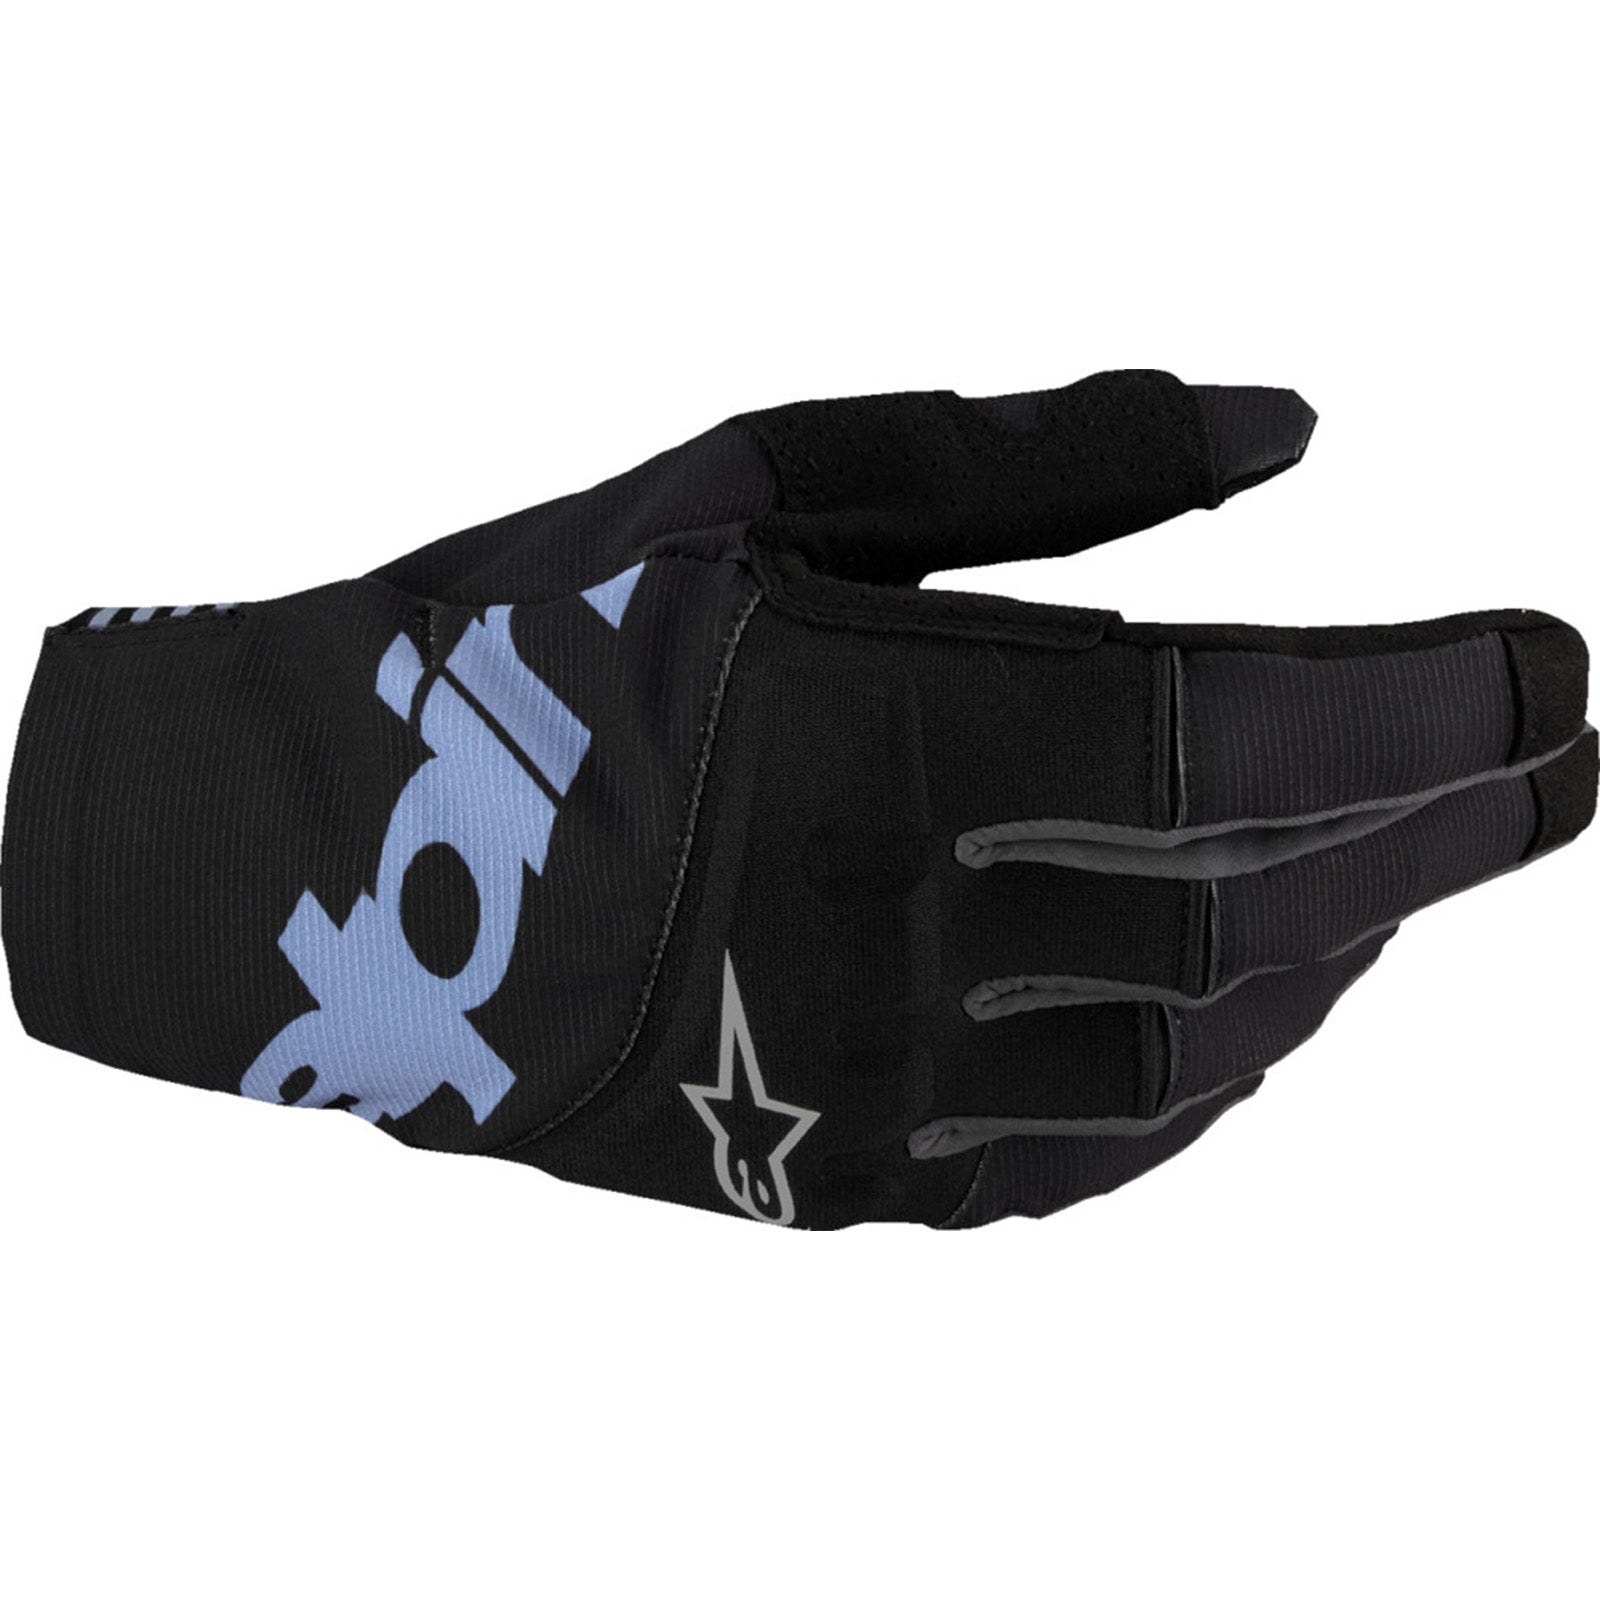 Alpinestars Techstar Men's Off-Road Gloves-3330